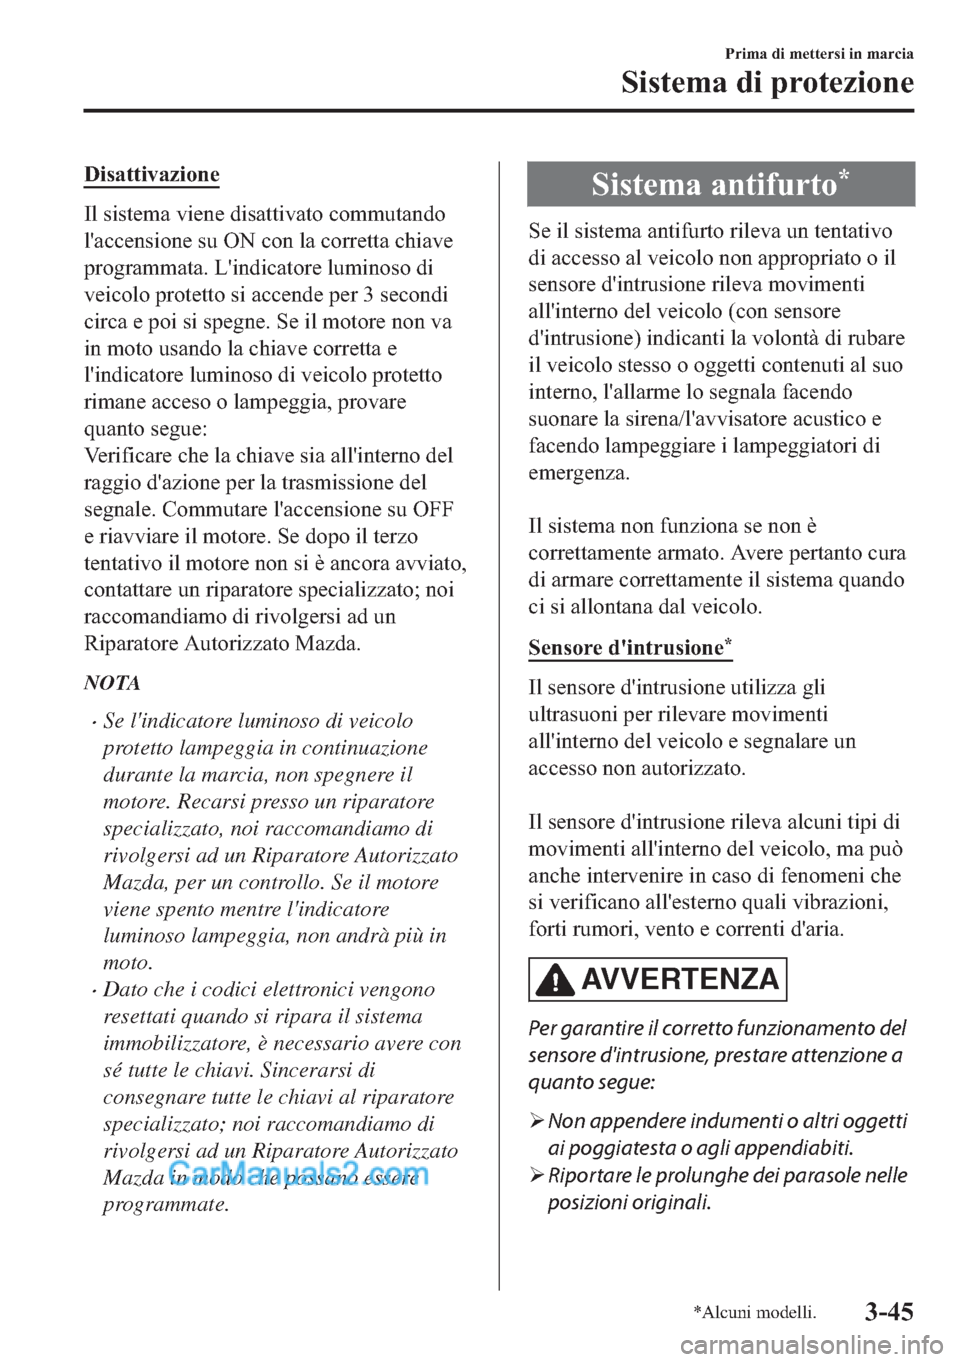 MAZDA MODEL 2 2019  Manuale del proprietario (in Italian) ��L�V�D�W�W�L�Y�D�]�L�R�Q�H
�,�O��V�L�V�W�H�P�D��Y�L�H�Q�H��G�L�V�D�W�W�L�Y�D�W�R��F�R�P�P�X�W�D�Q�G�R
�O�
�D�F�F�H�Q�V�L�R�Q�H��V�X��2�1��F�R�Q��O�D��F�R�U�U�H�W�W�D��F�K�L�D�Y�H
�S�U�R�J�